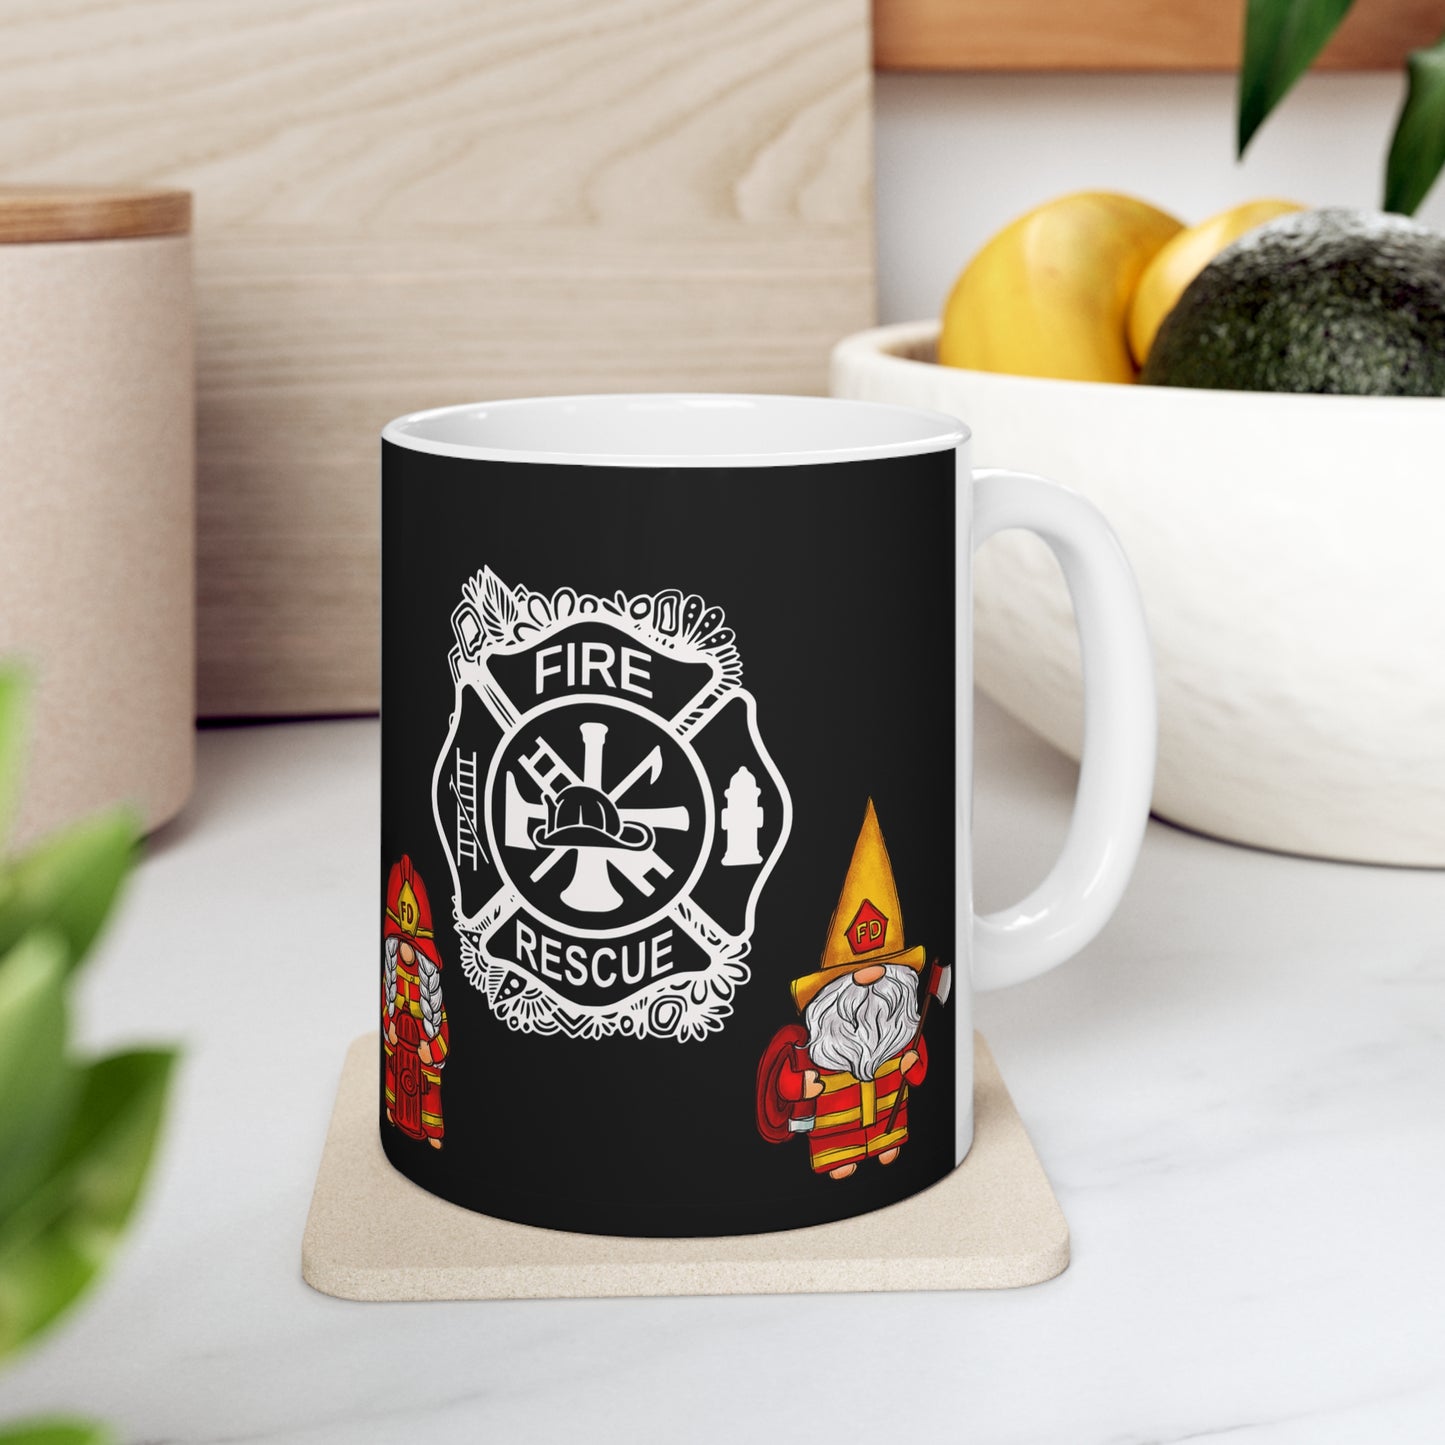 Fire Rescue Ceramic Mug 11oz